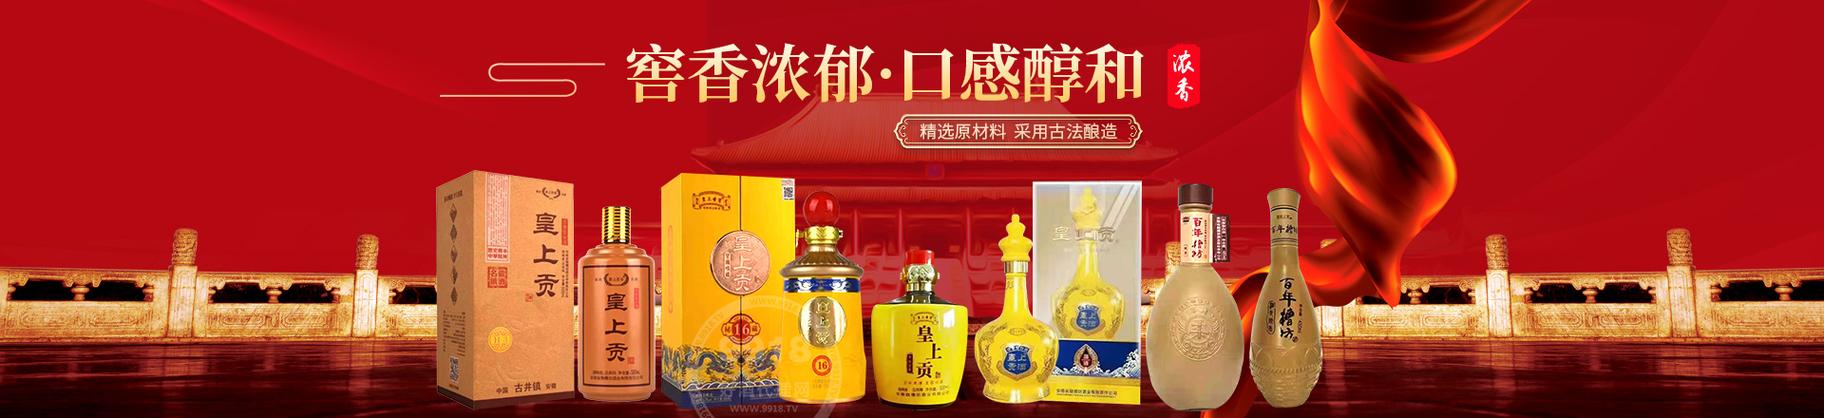 安徽省魏槽坊酒业有限责任公司资质证照-食品代理网